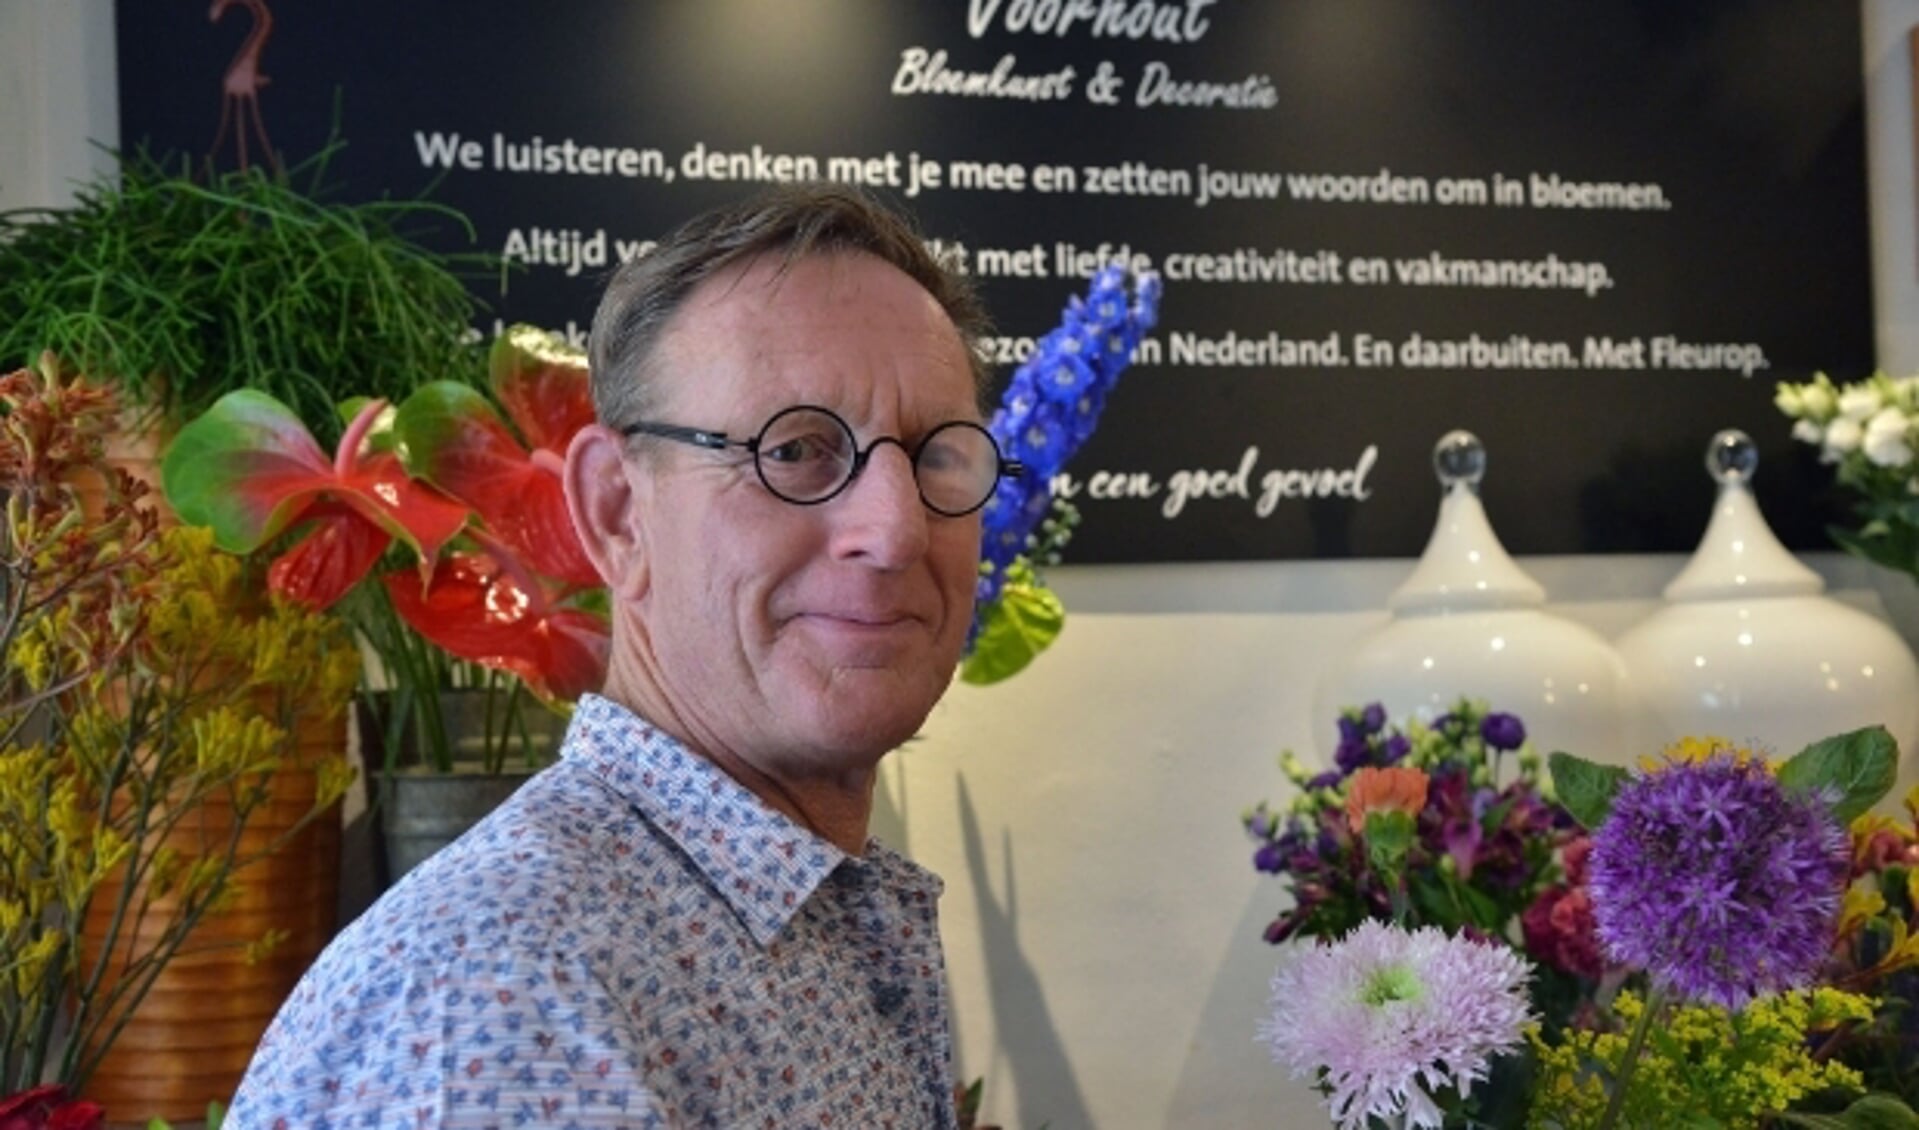 Hennie Voorhout van Bloemkunst en Decoratie ging voor de coronacrisis drie keer per week naar de bloemenveiling; nu is dat iedere dag. Foto: Paul van den Dungen

